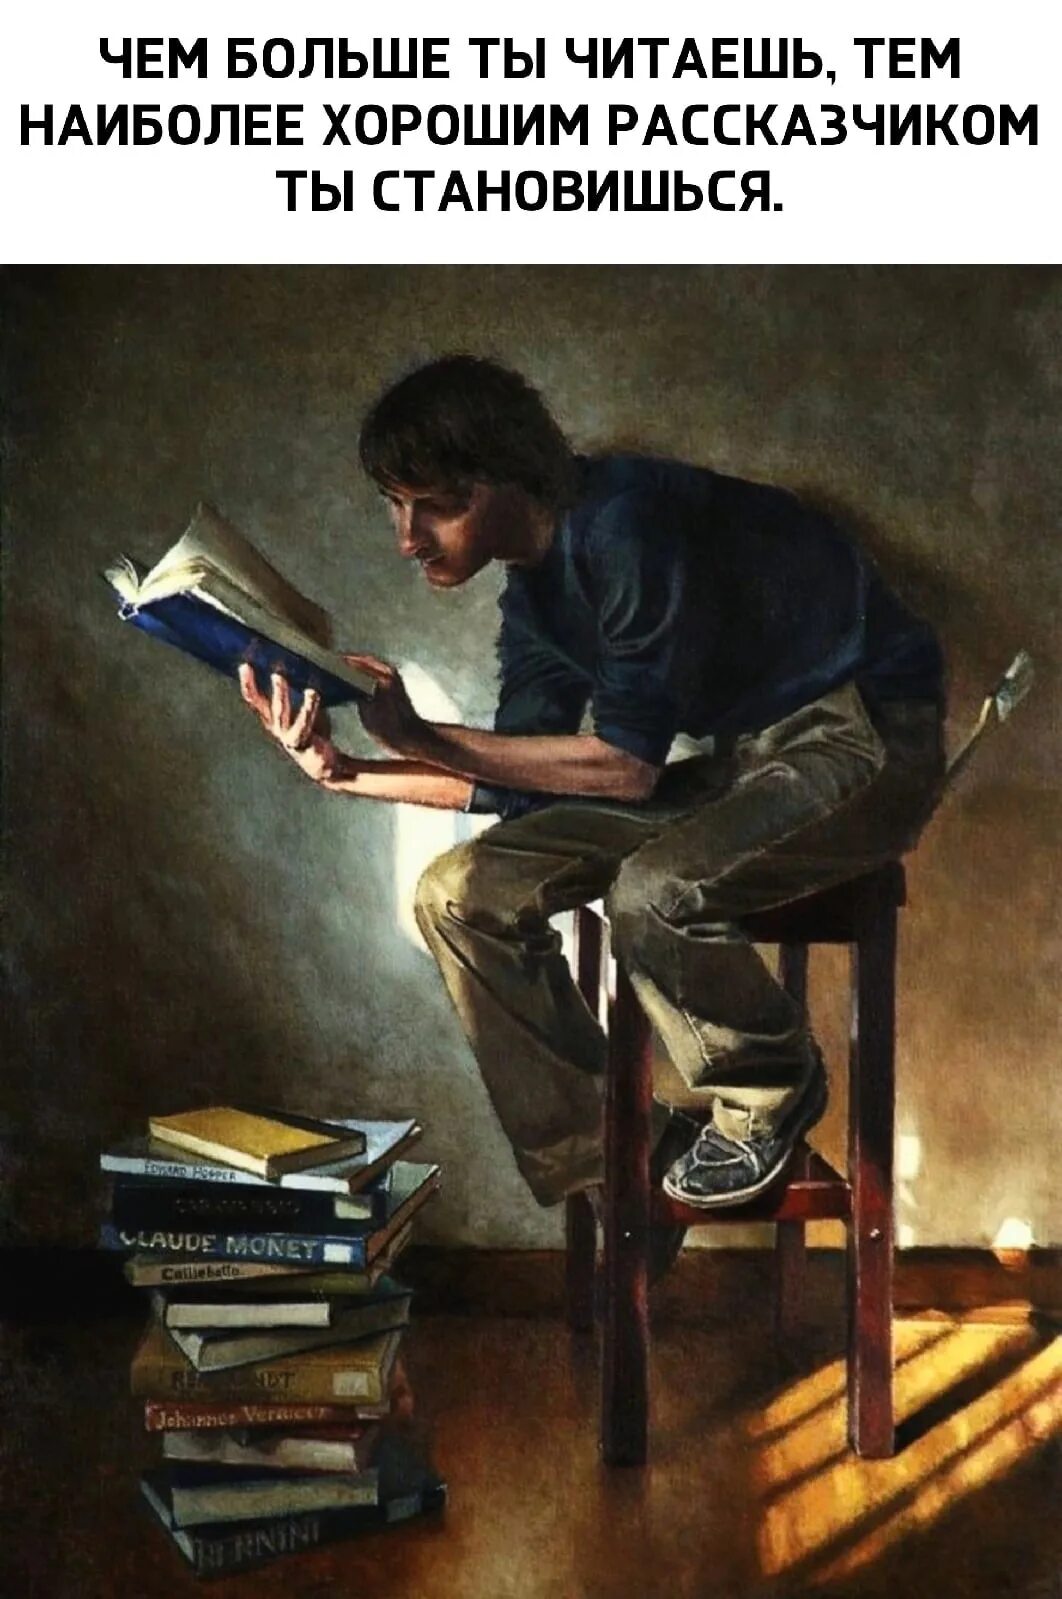 Юноша поэту. Картины Джонатана Уолстенхолма. Книга человек. Мужчина с книгой. Парень с книгой.